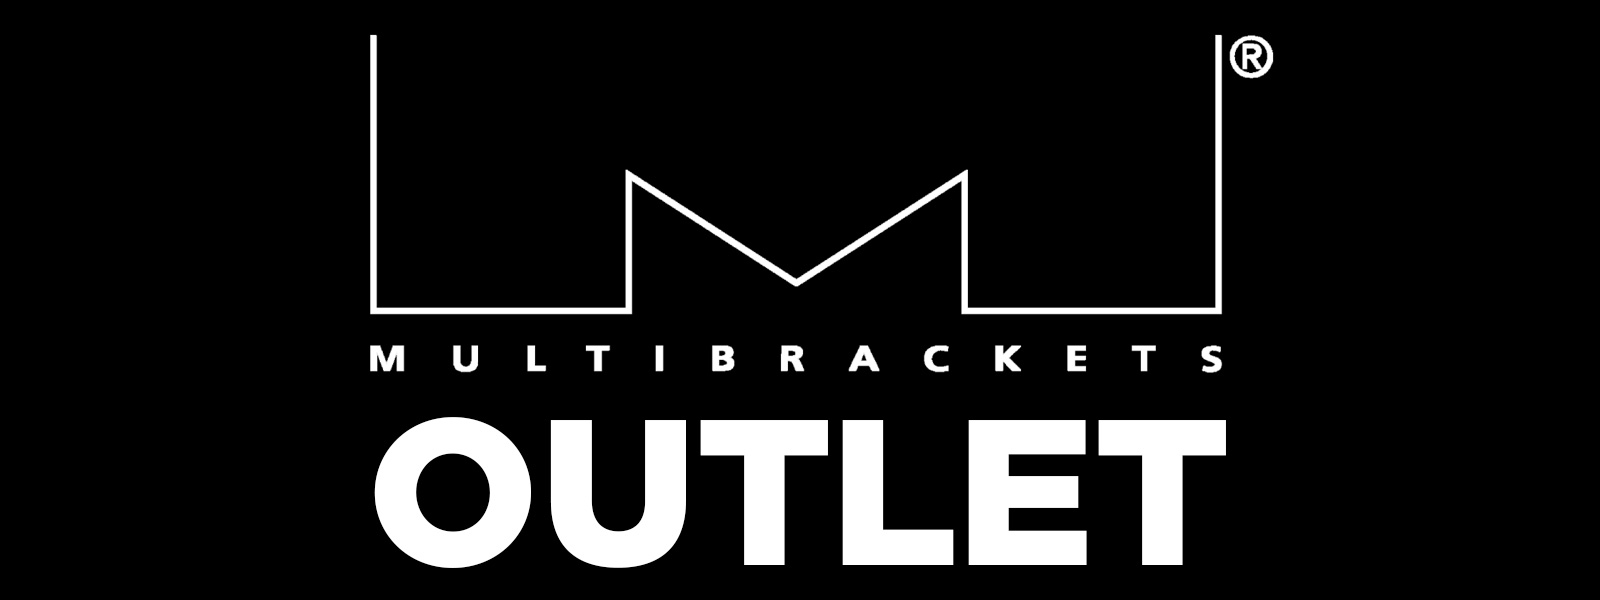 multibrackets_outlet_header